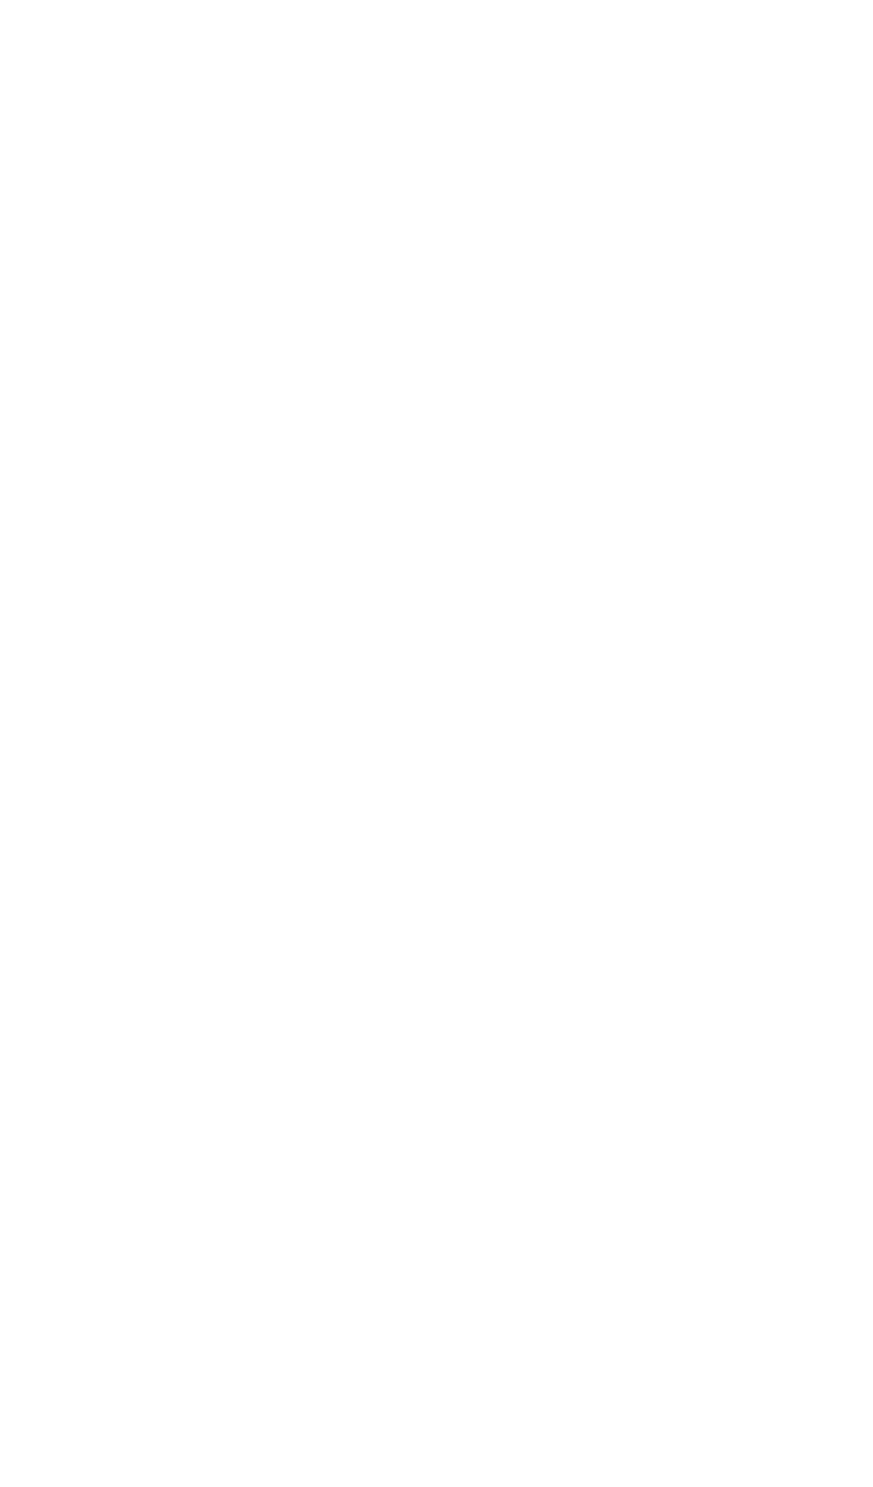 United Bankshares logo for dark backgrounds (transparent PNG)